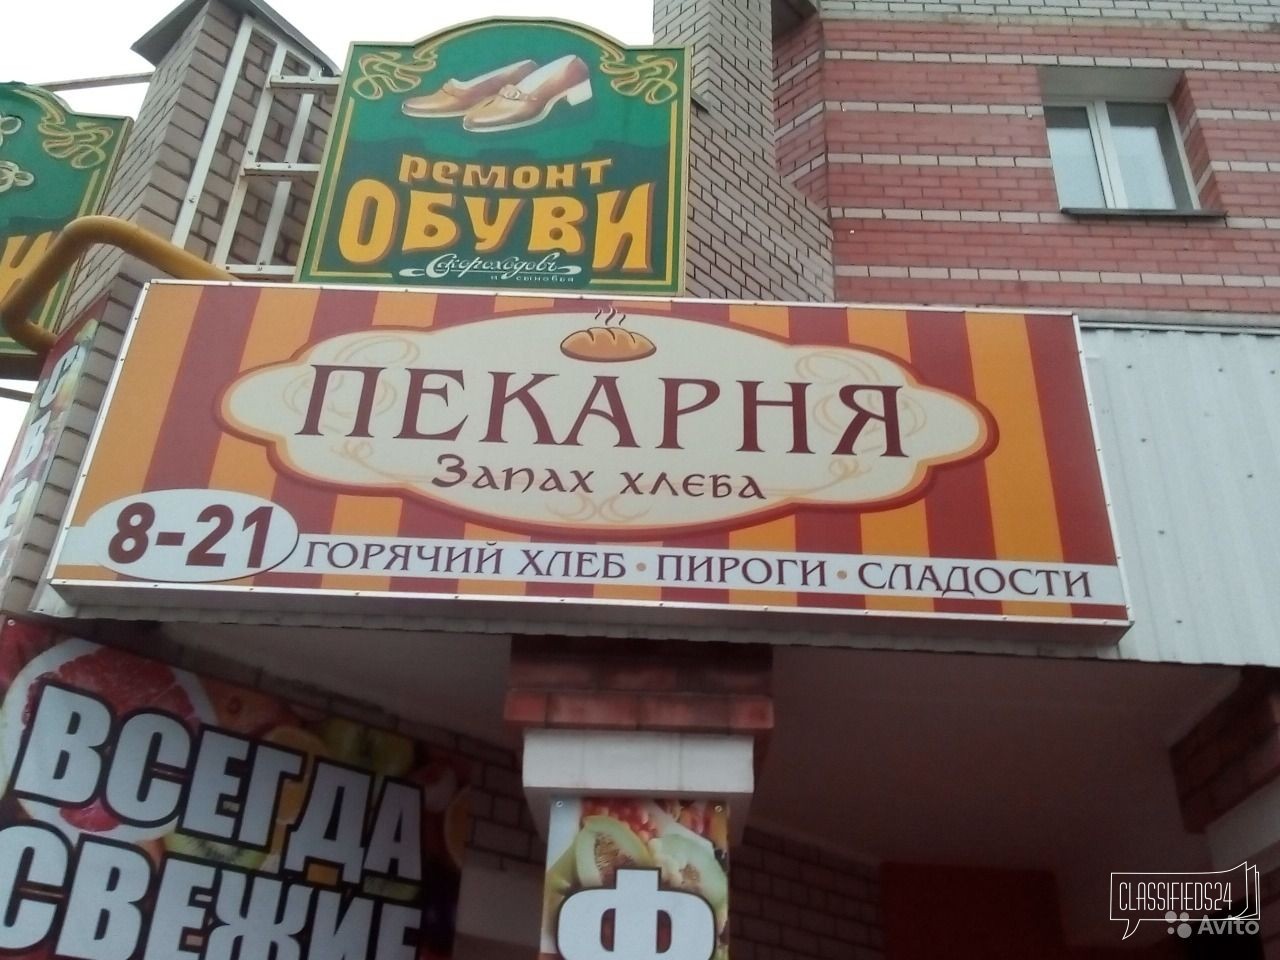 Продам торговое оборудование в городе Череповец, фото 1, телефон продавца: +7 (964) 660-69-84